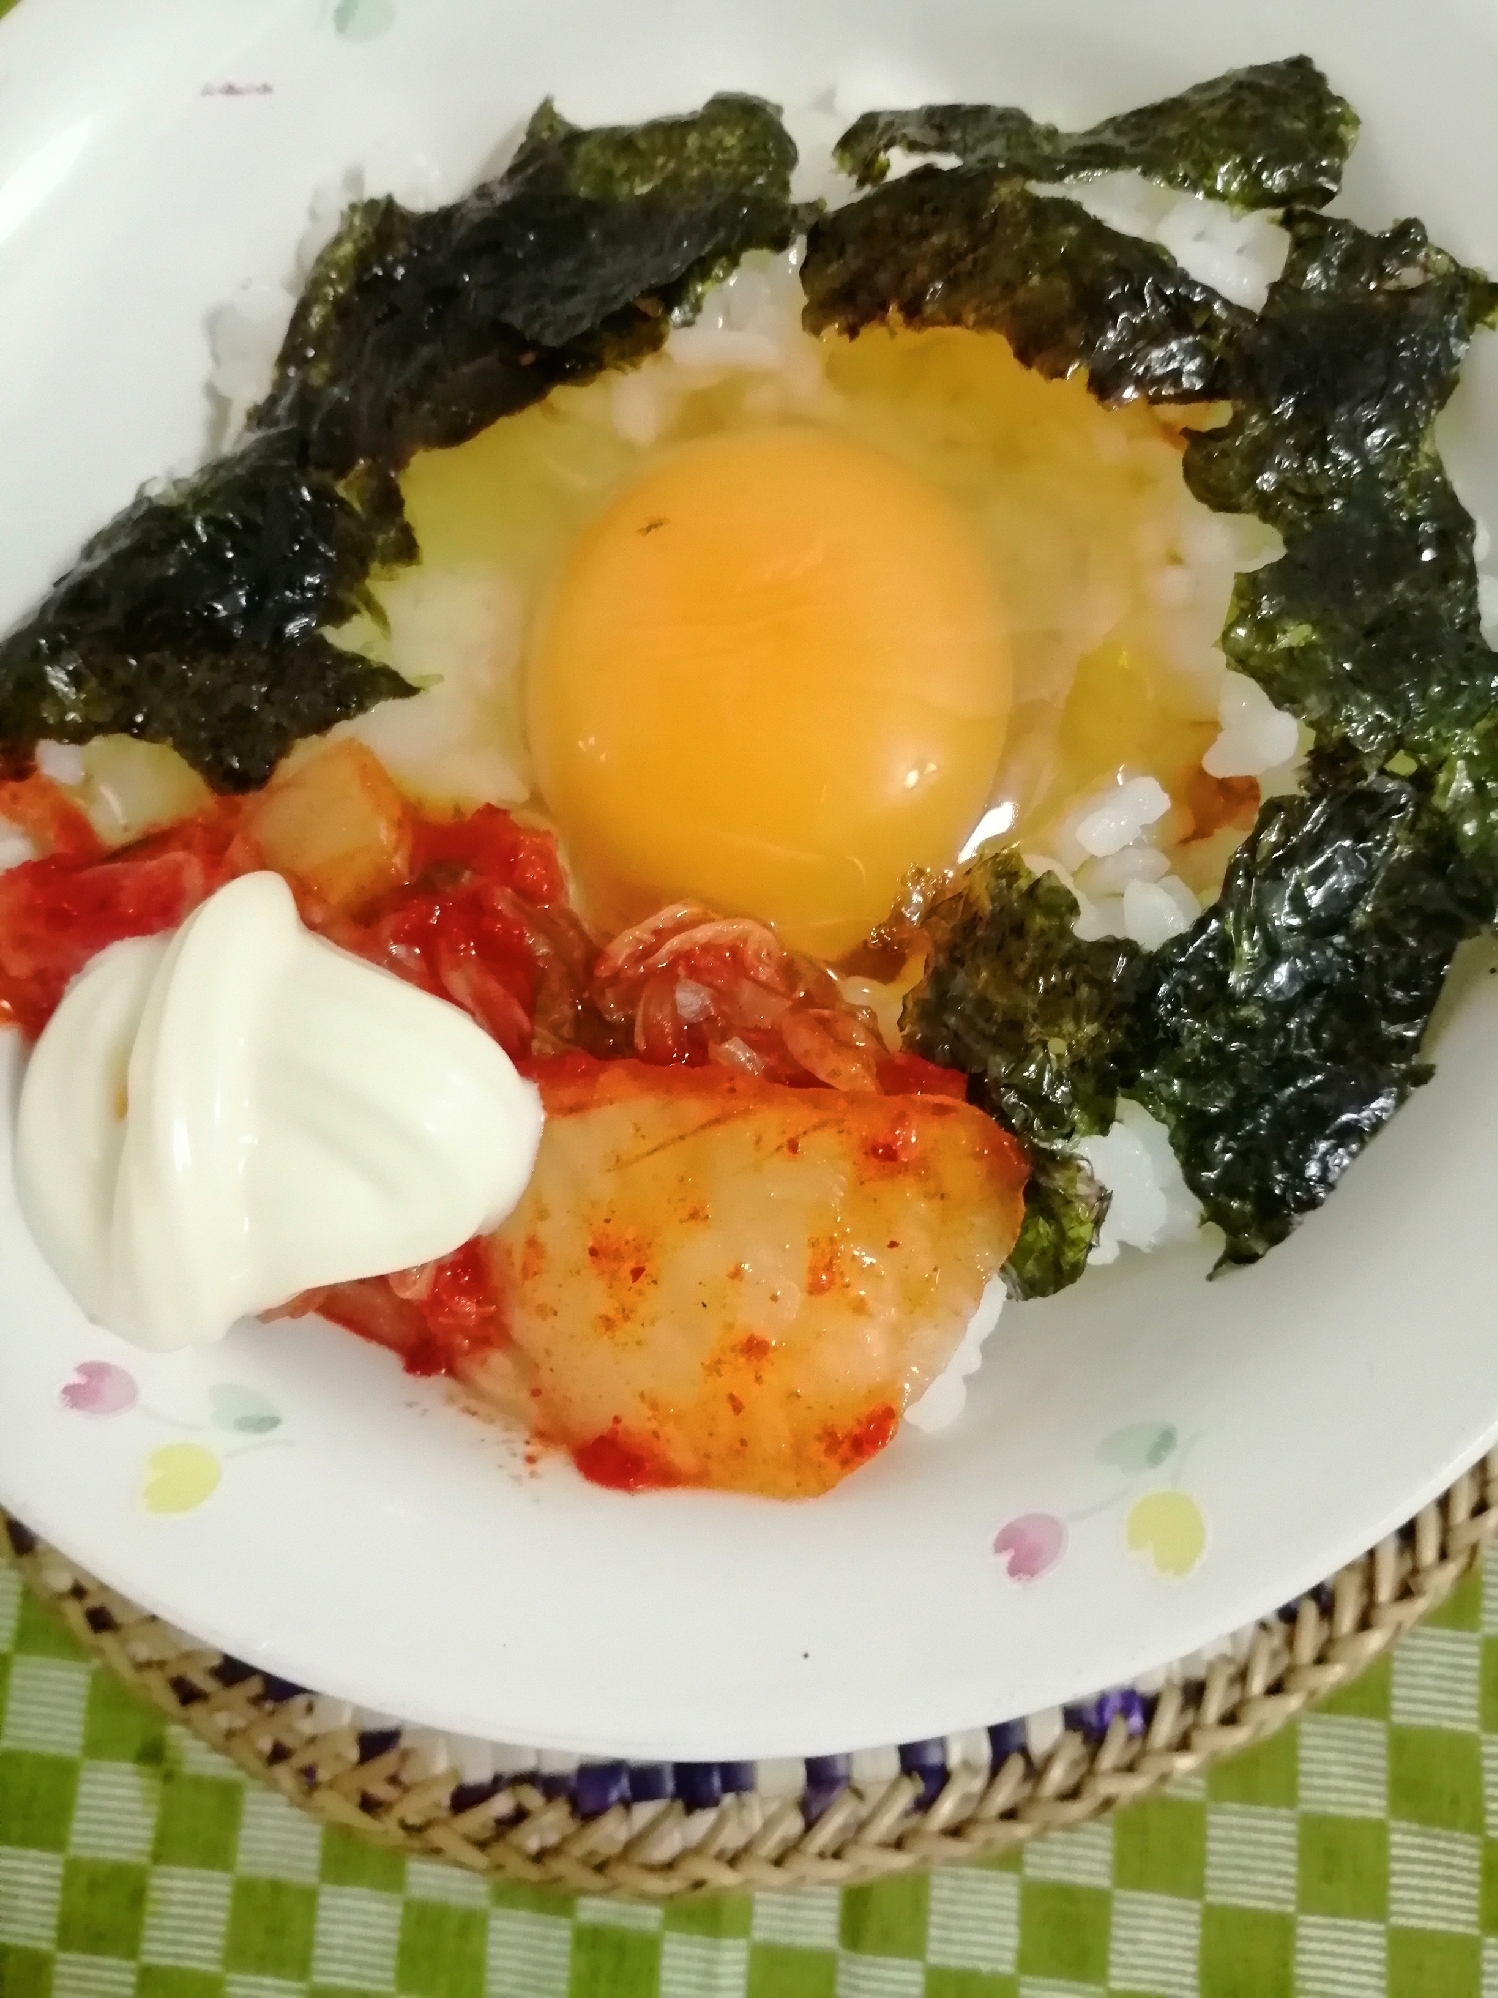 キムチマヨ海苔ごま油つゆ卵かけご飯